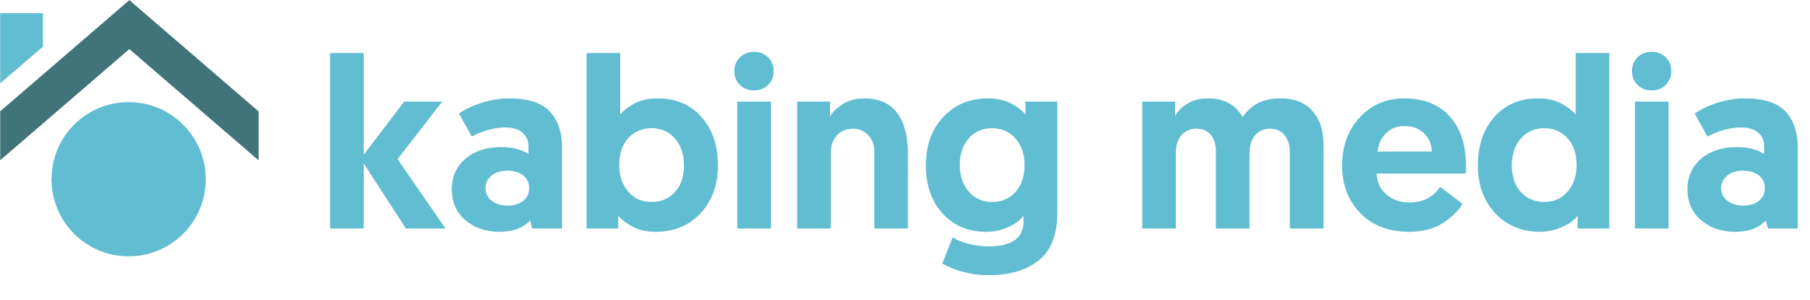 Kabing Media Logo